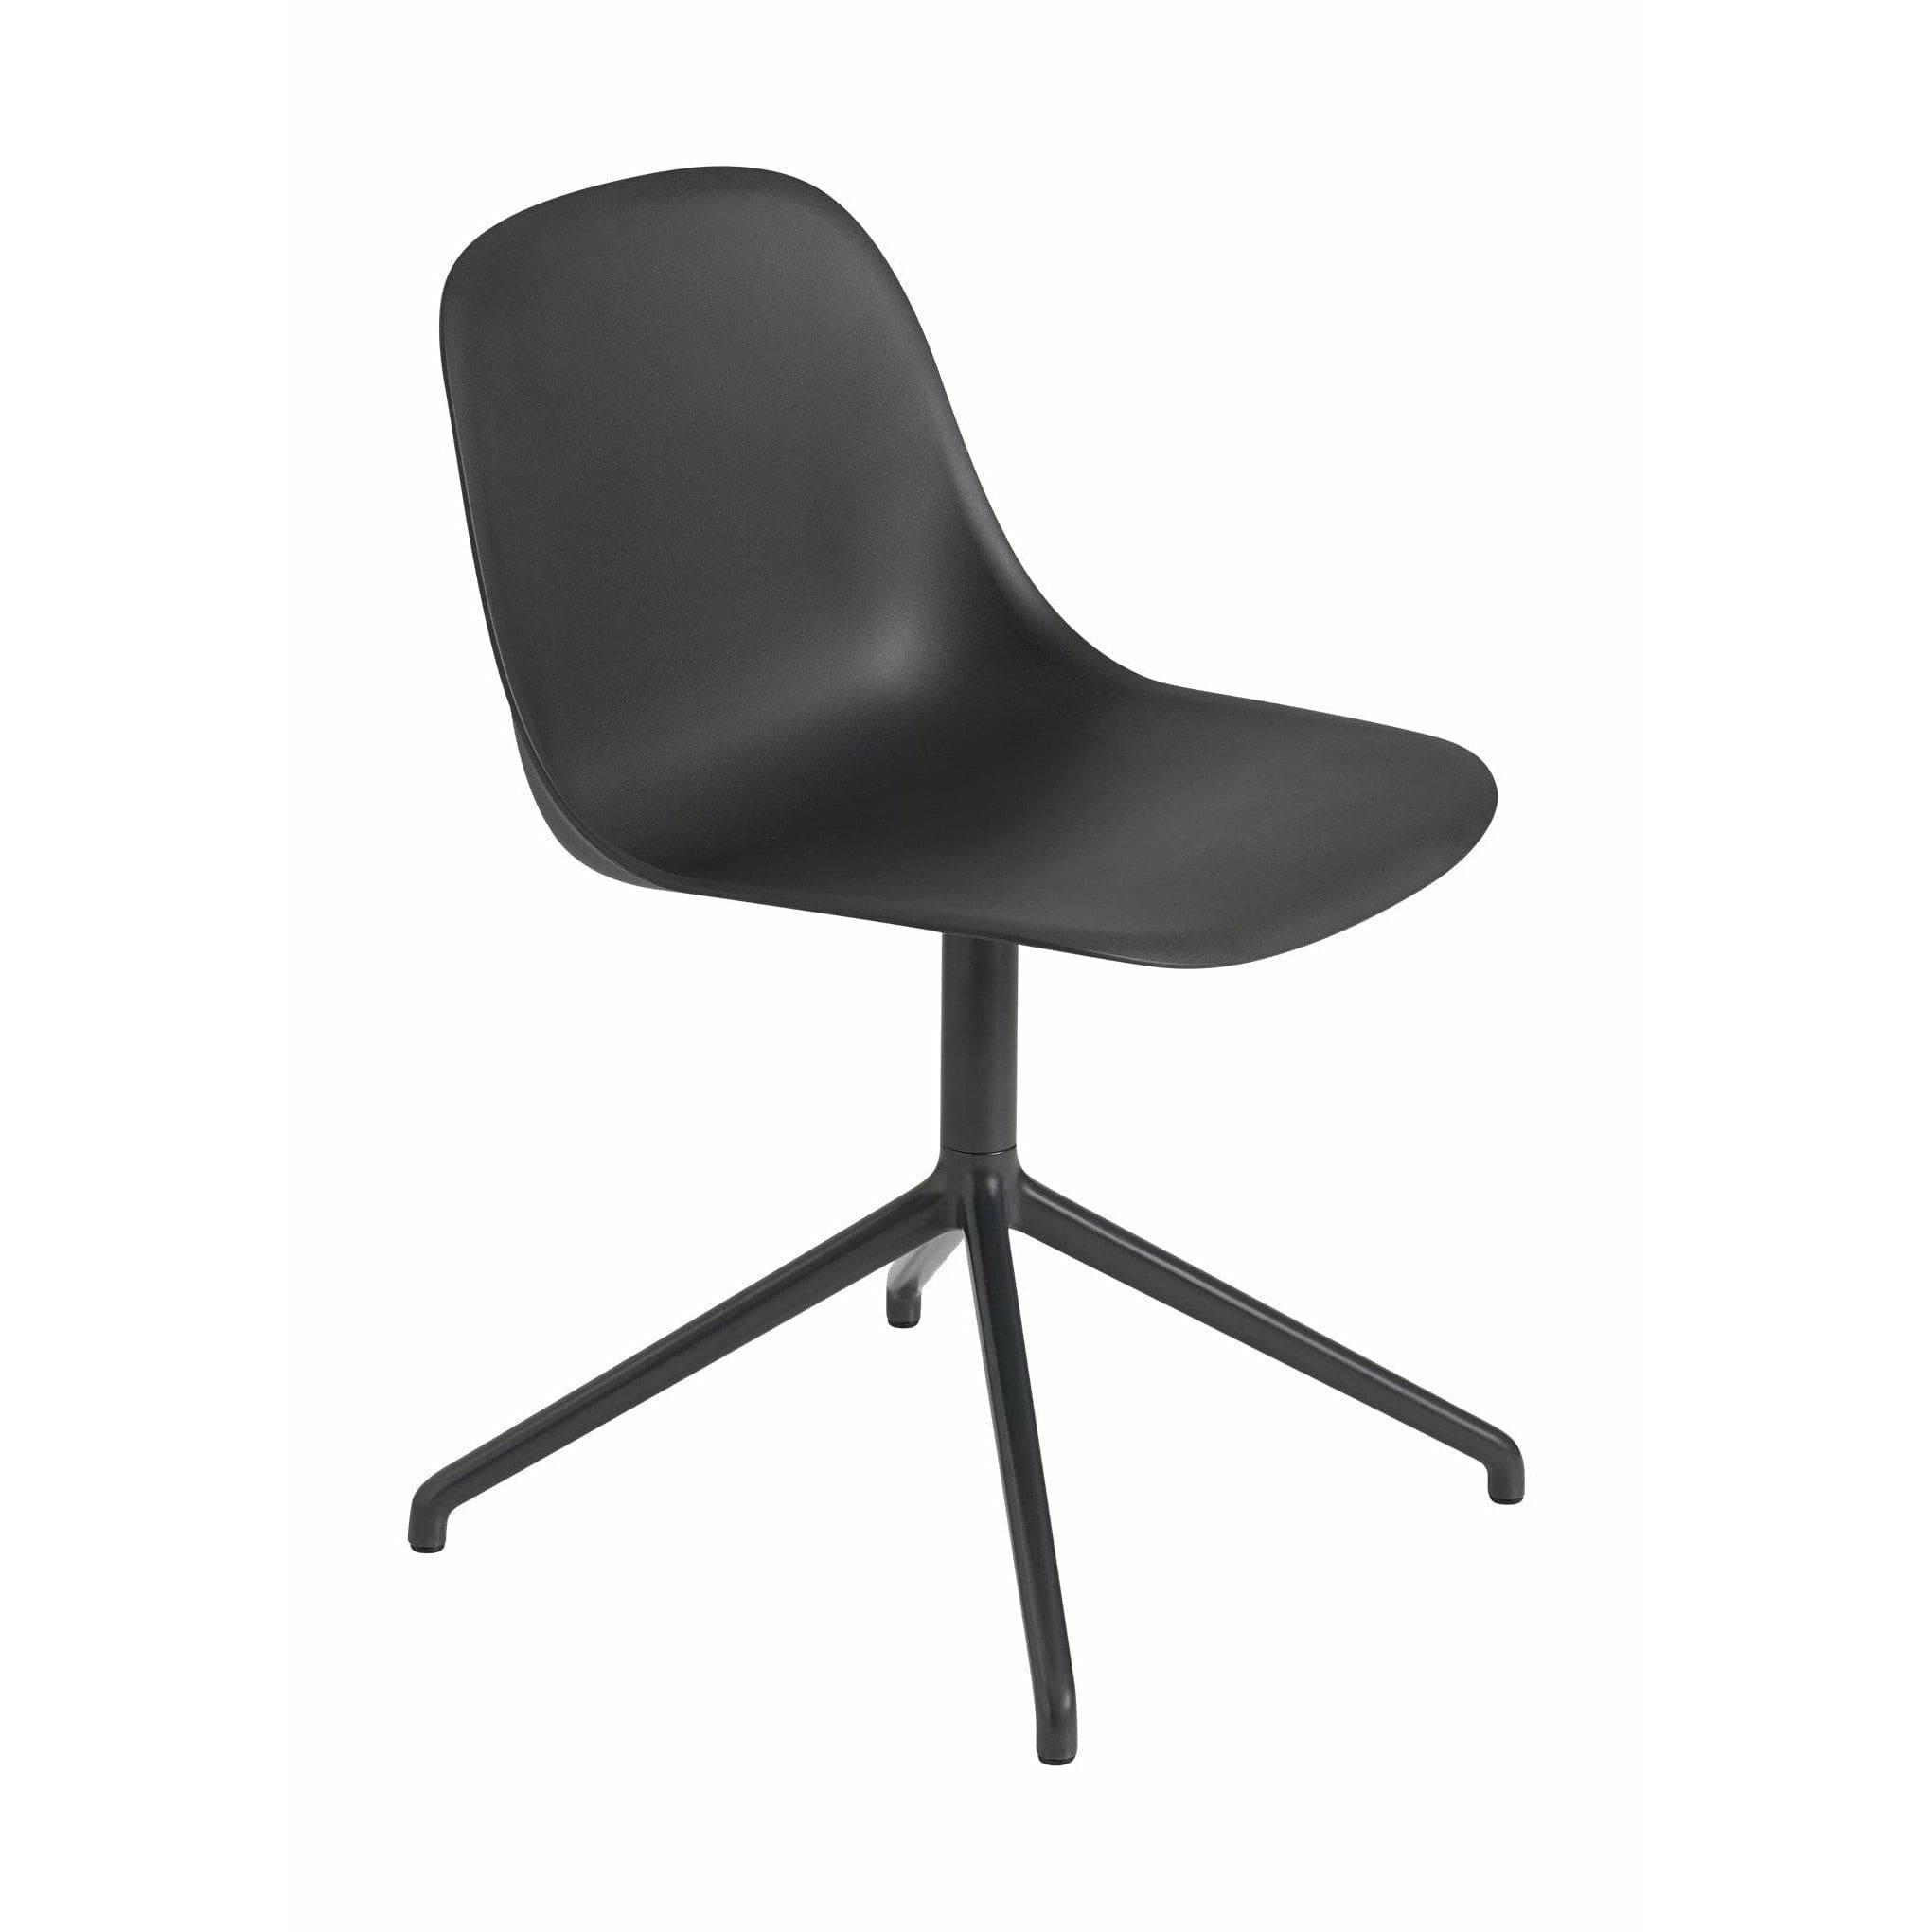 Muuto Kuitupuolen tuoli, joka on valmistettu kierrätetystä muovisesta käännöksestä, musta/musta